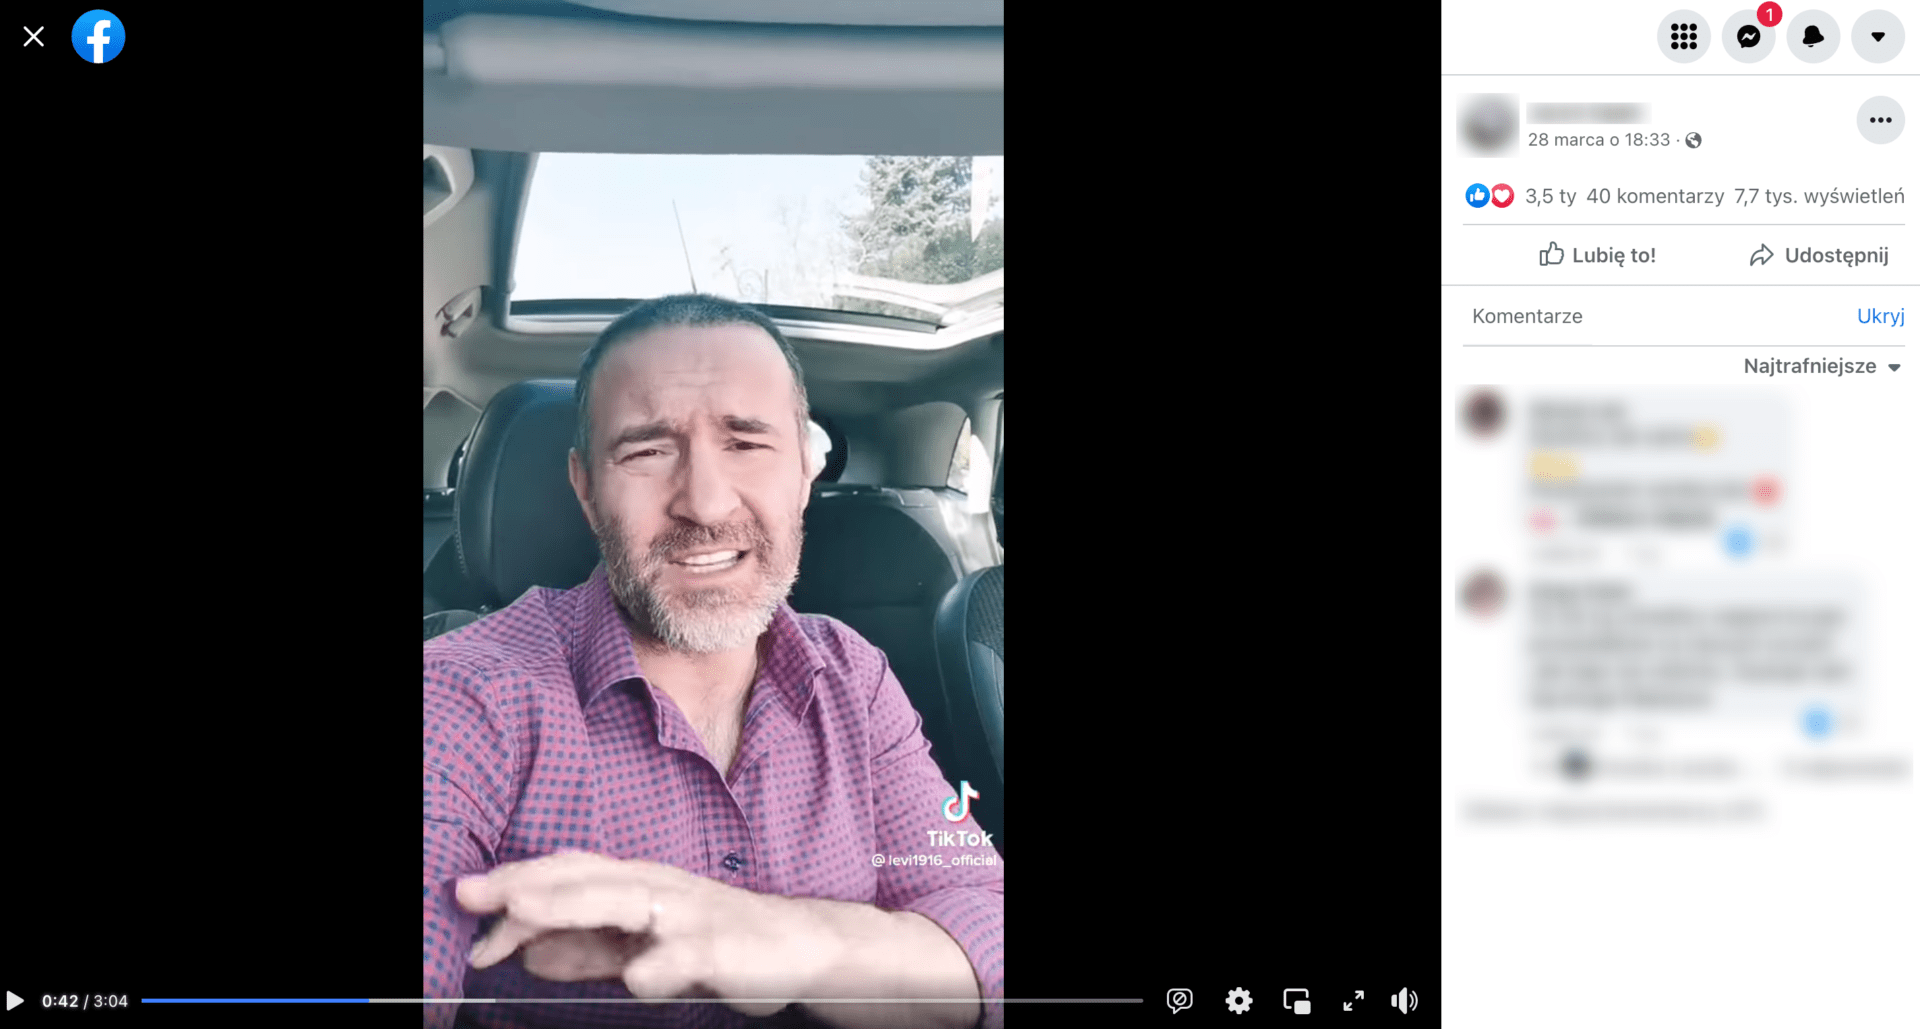 Zrzut ekranu z postu na Facebooku. Na nagraniu widoczny jest mężczyzna w samochodzie. Obok filmu widoczna jest liczba reakcji użytkowników: 3,5 tys. polubień, 40 komentarzy, 7,3 tys. wyświetleń.